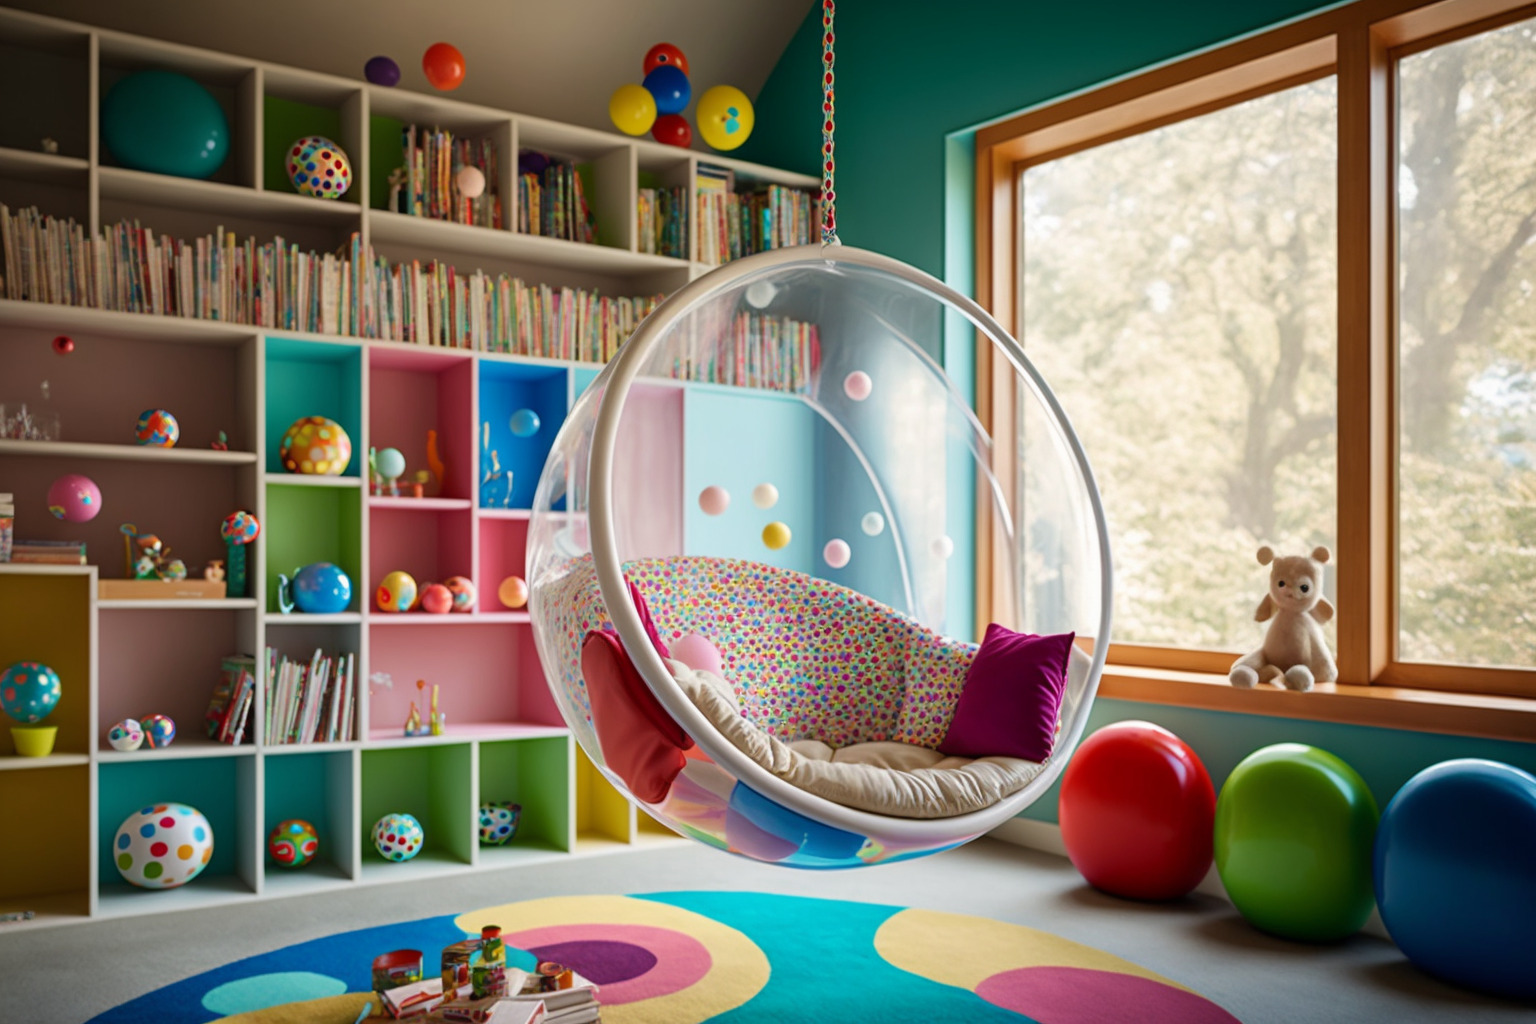 Verspieltes Und Farbenfrohes Kinderspielzimmer Mit Einem Durchsichtigen Bubble Chair